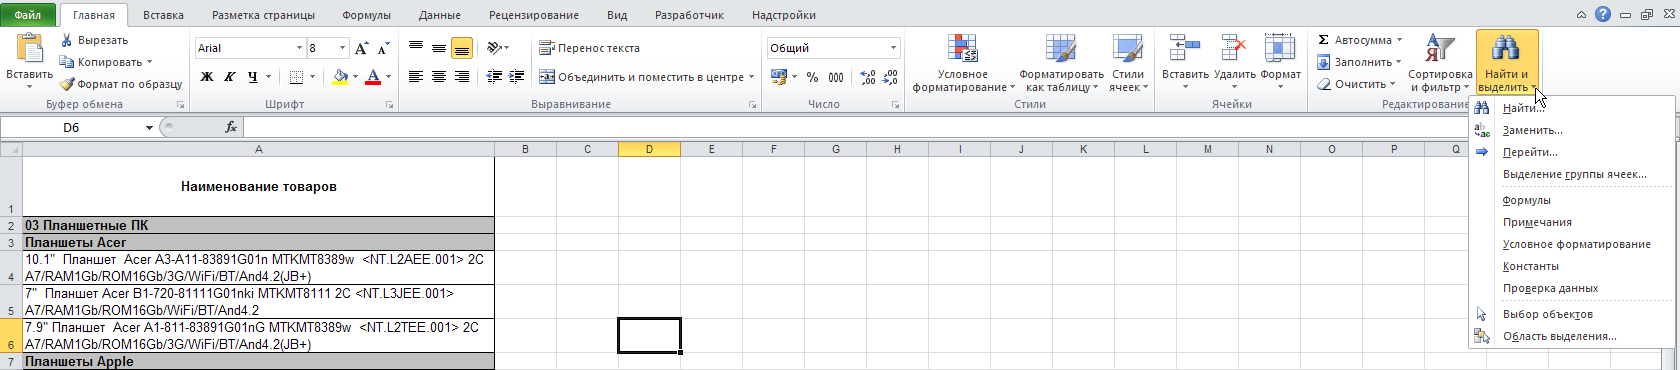 Excel: Лента - Главная - Редактирование - Найти и выделить - Список